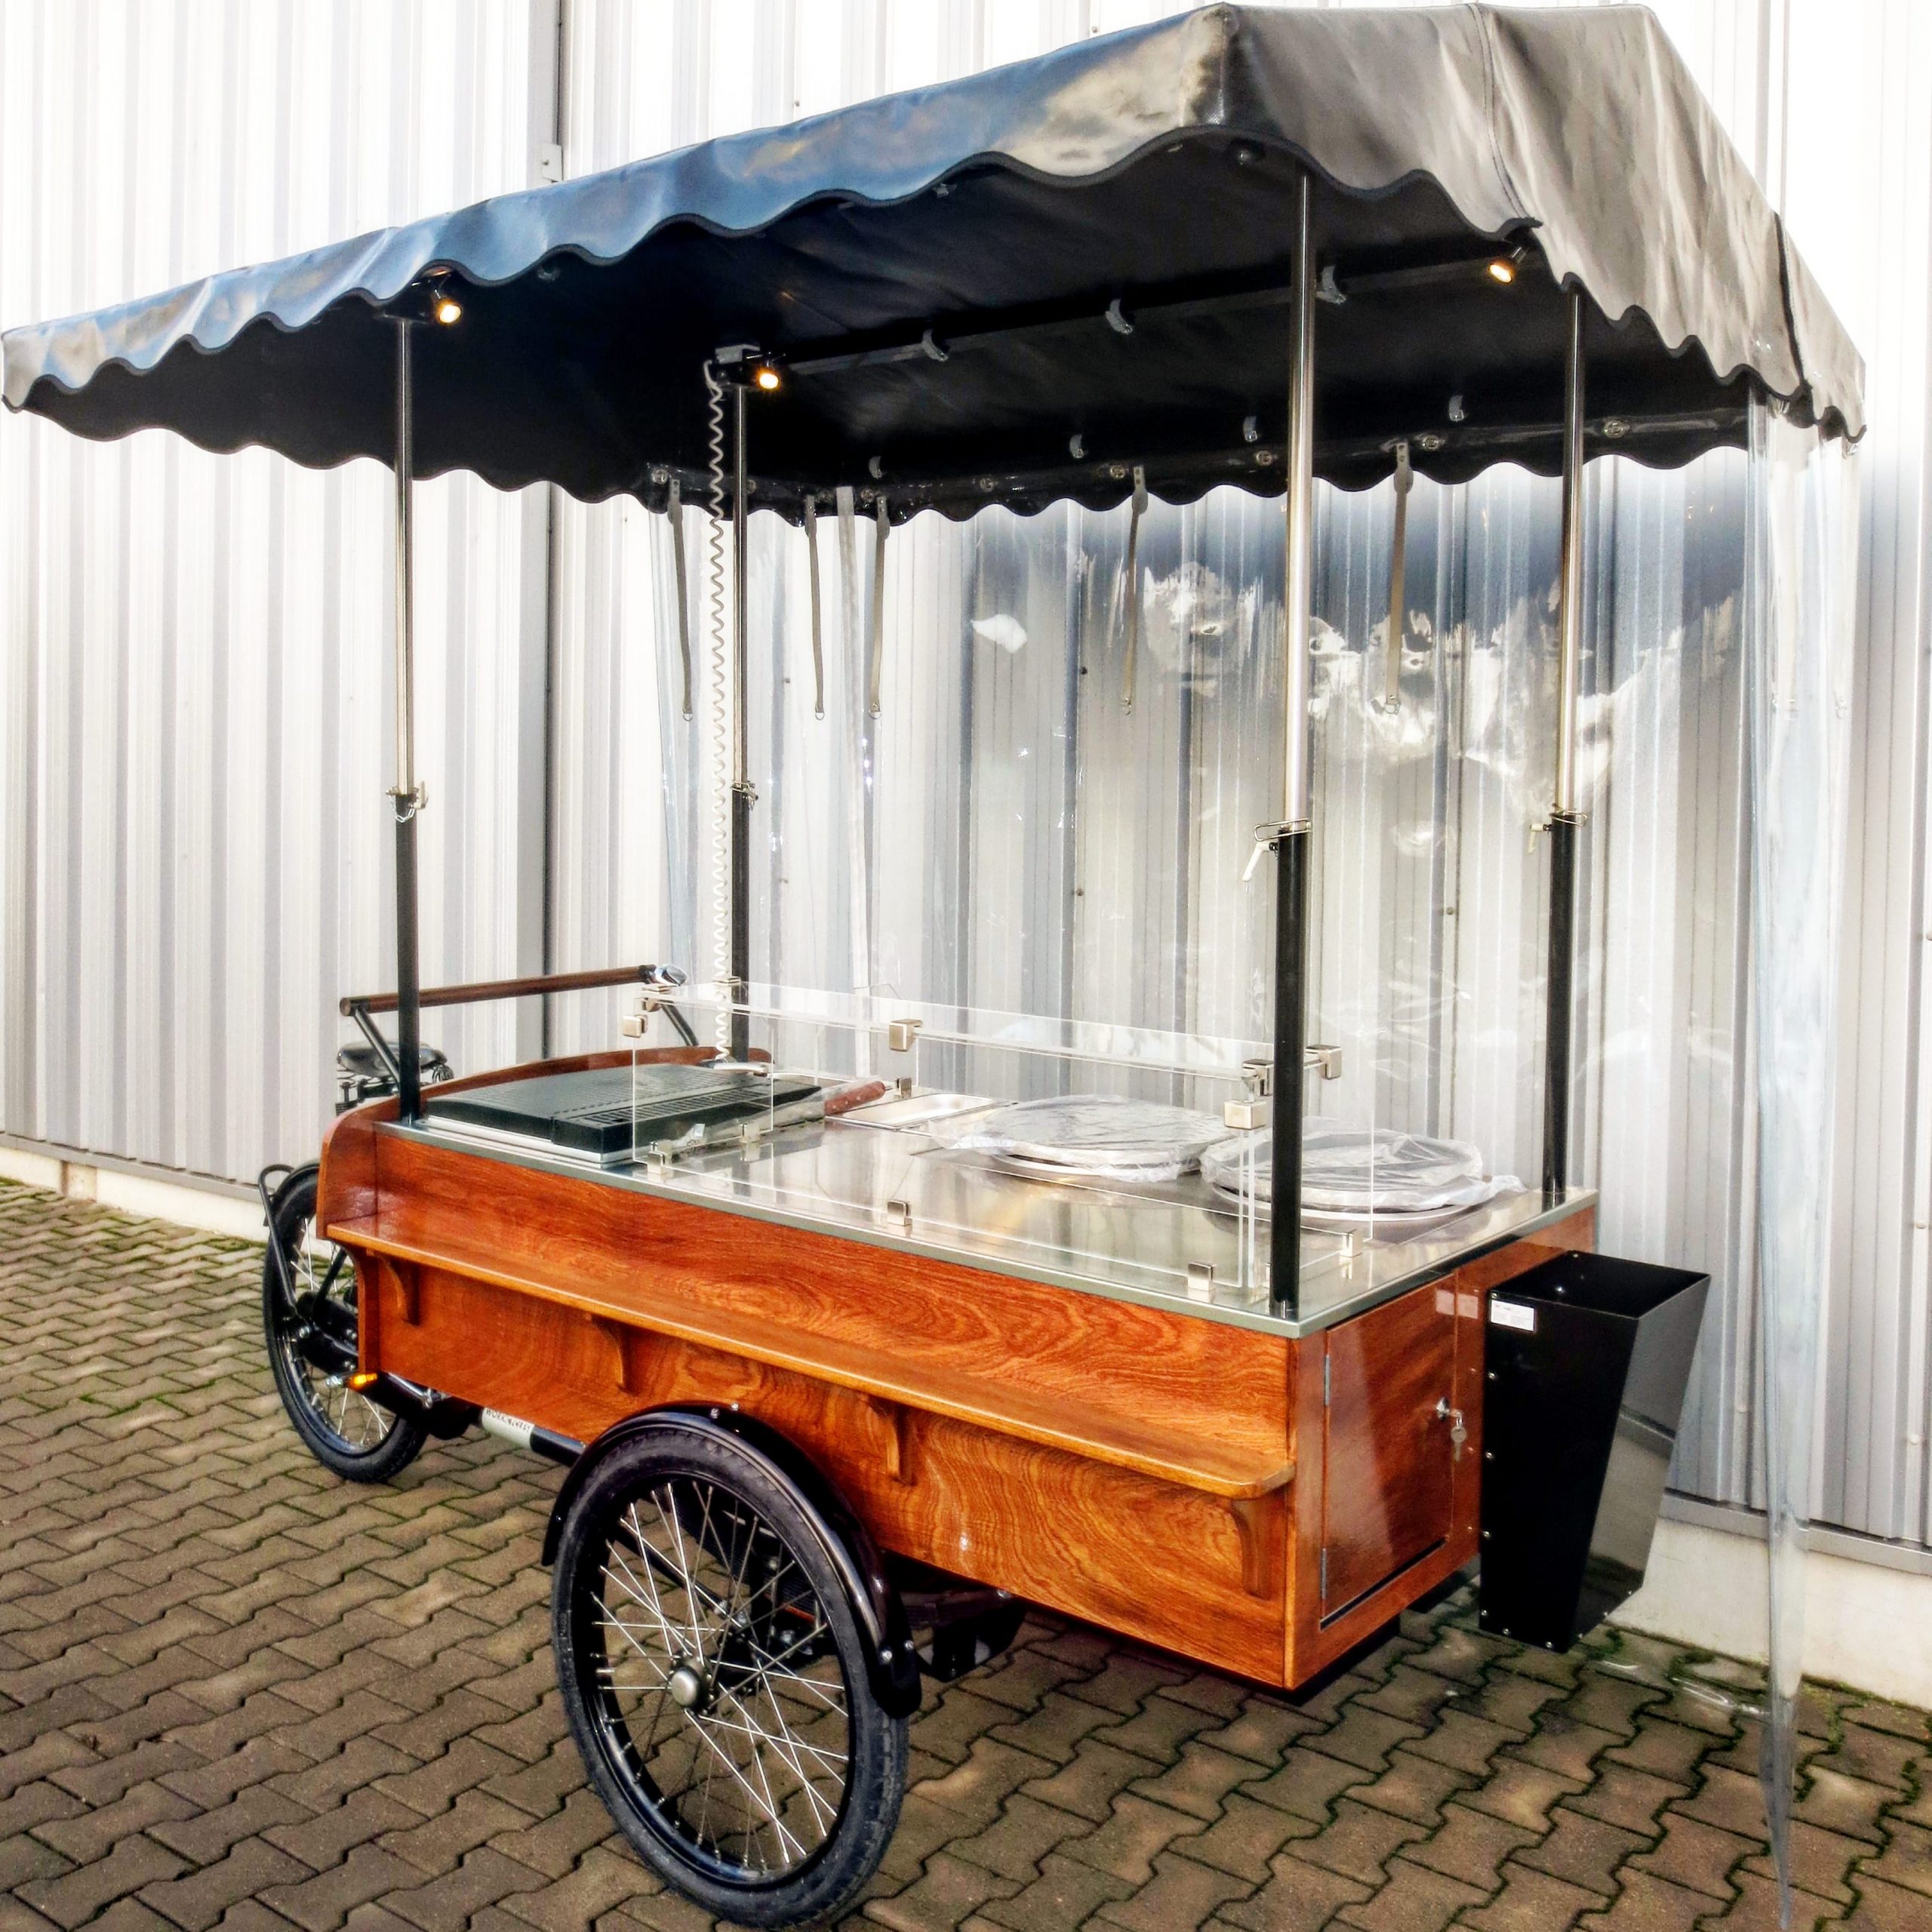 Eiswagen Eisstand Eis Verkaufswagen Verkaufsstand Eismobil